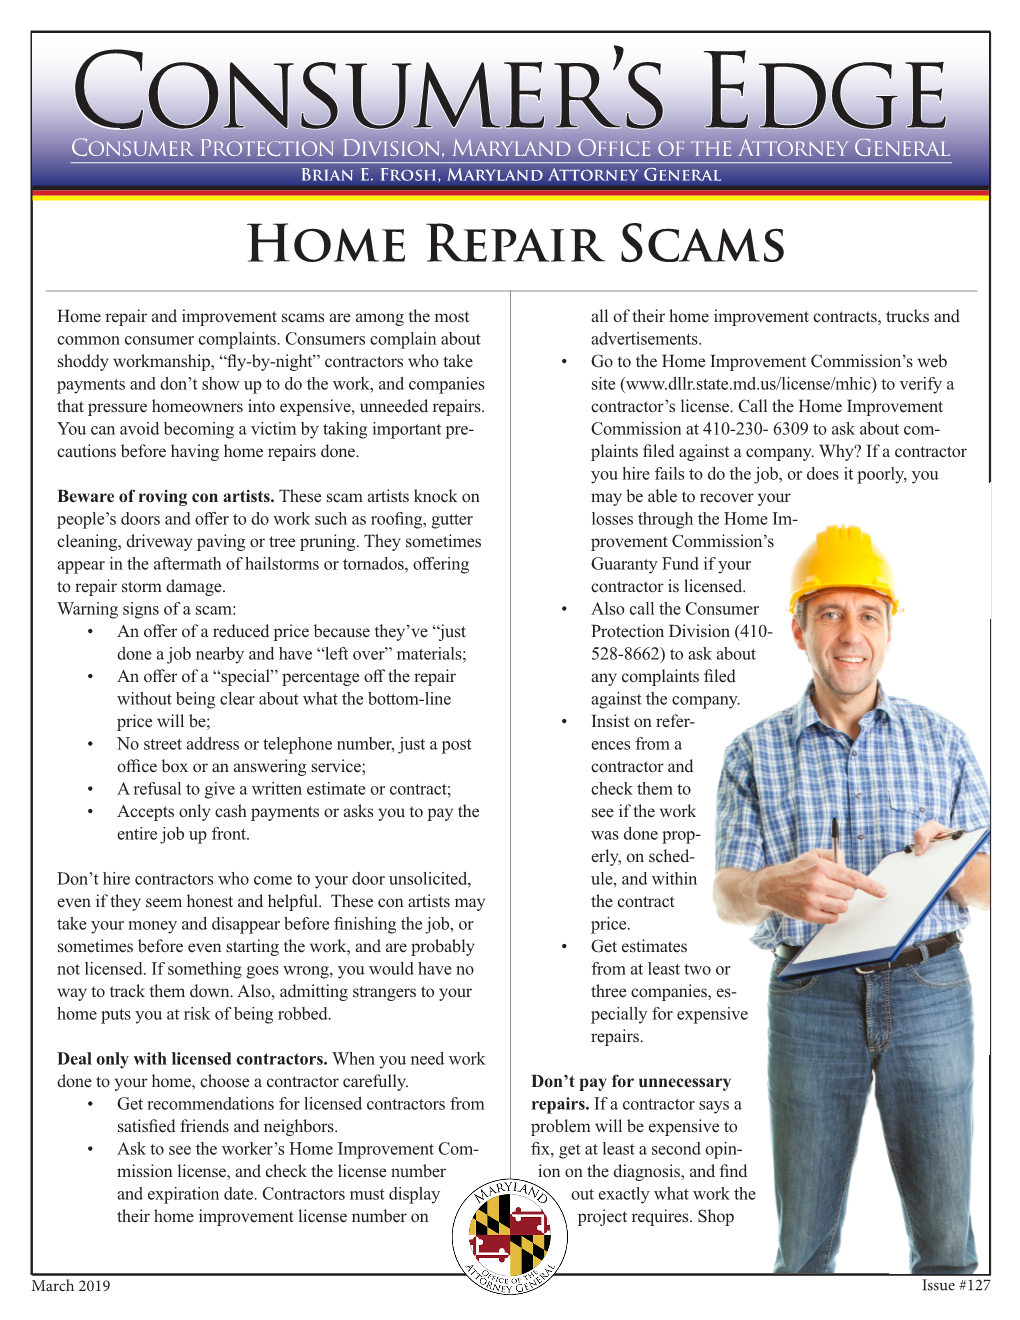 Home Repair Scams